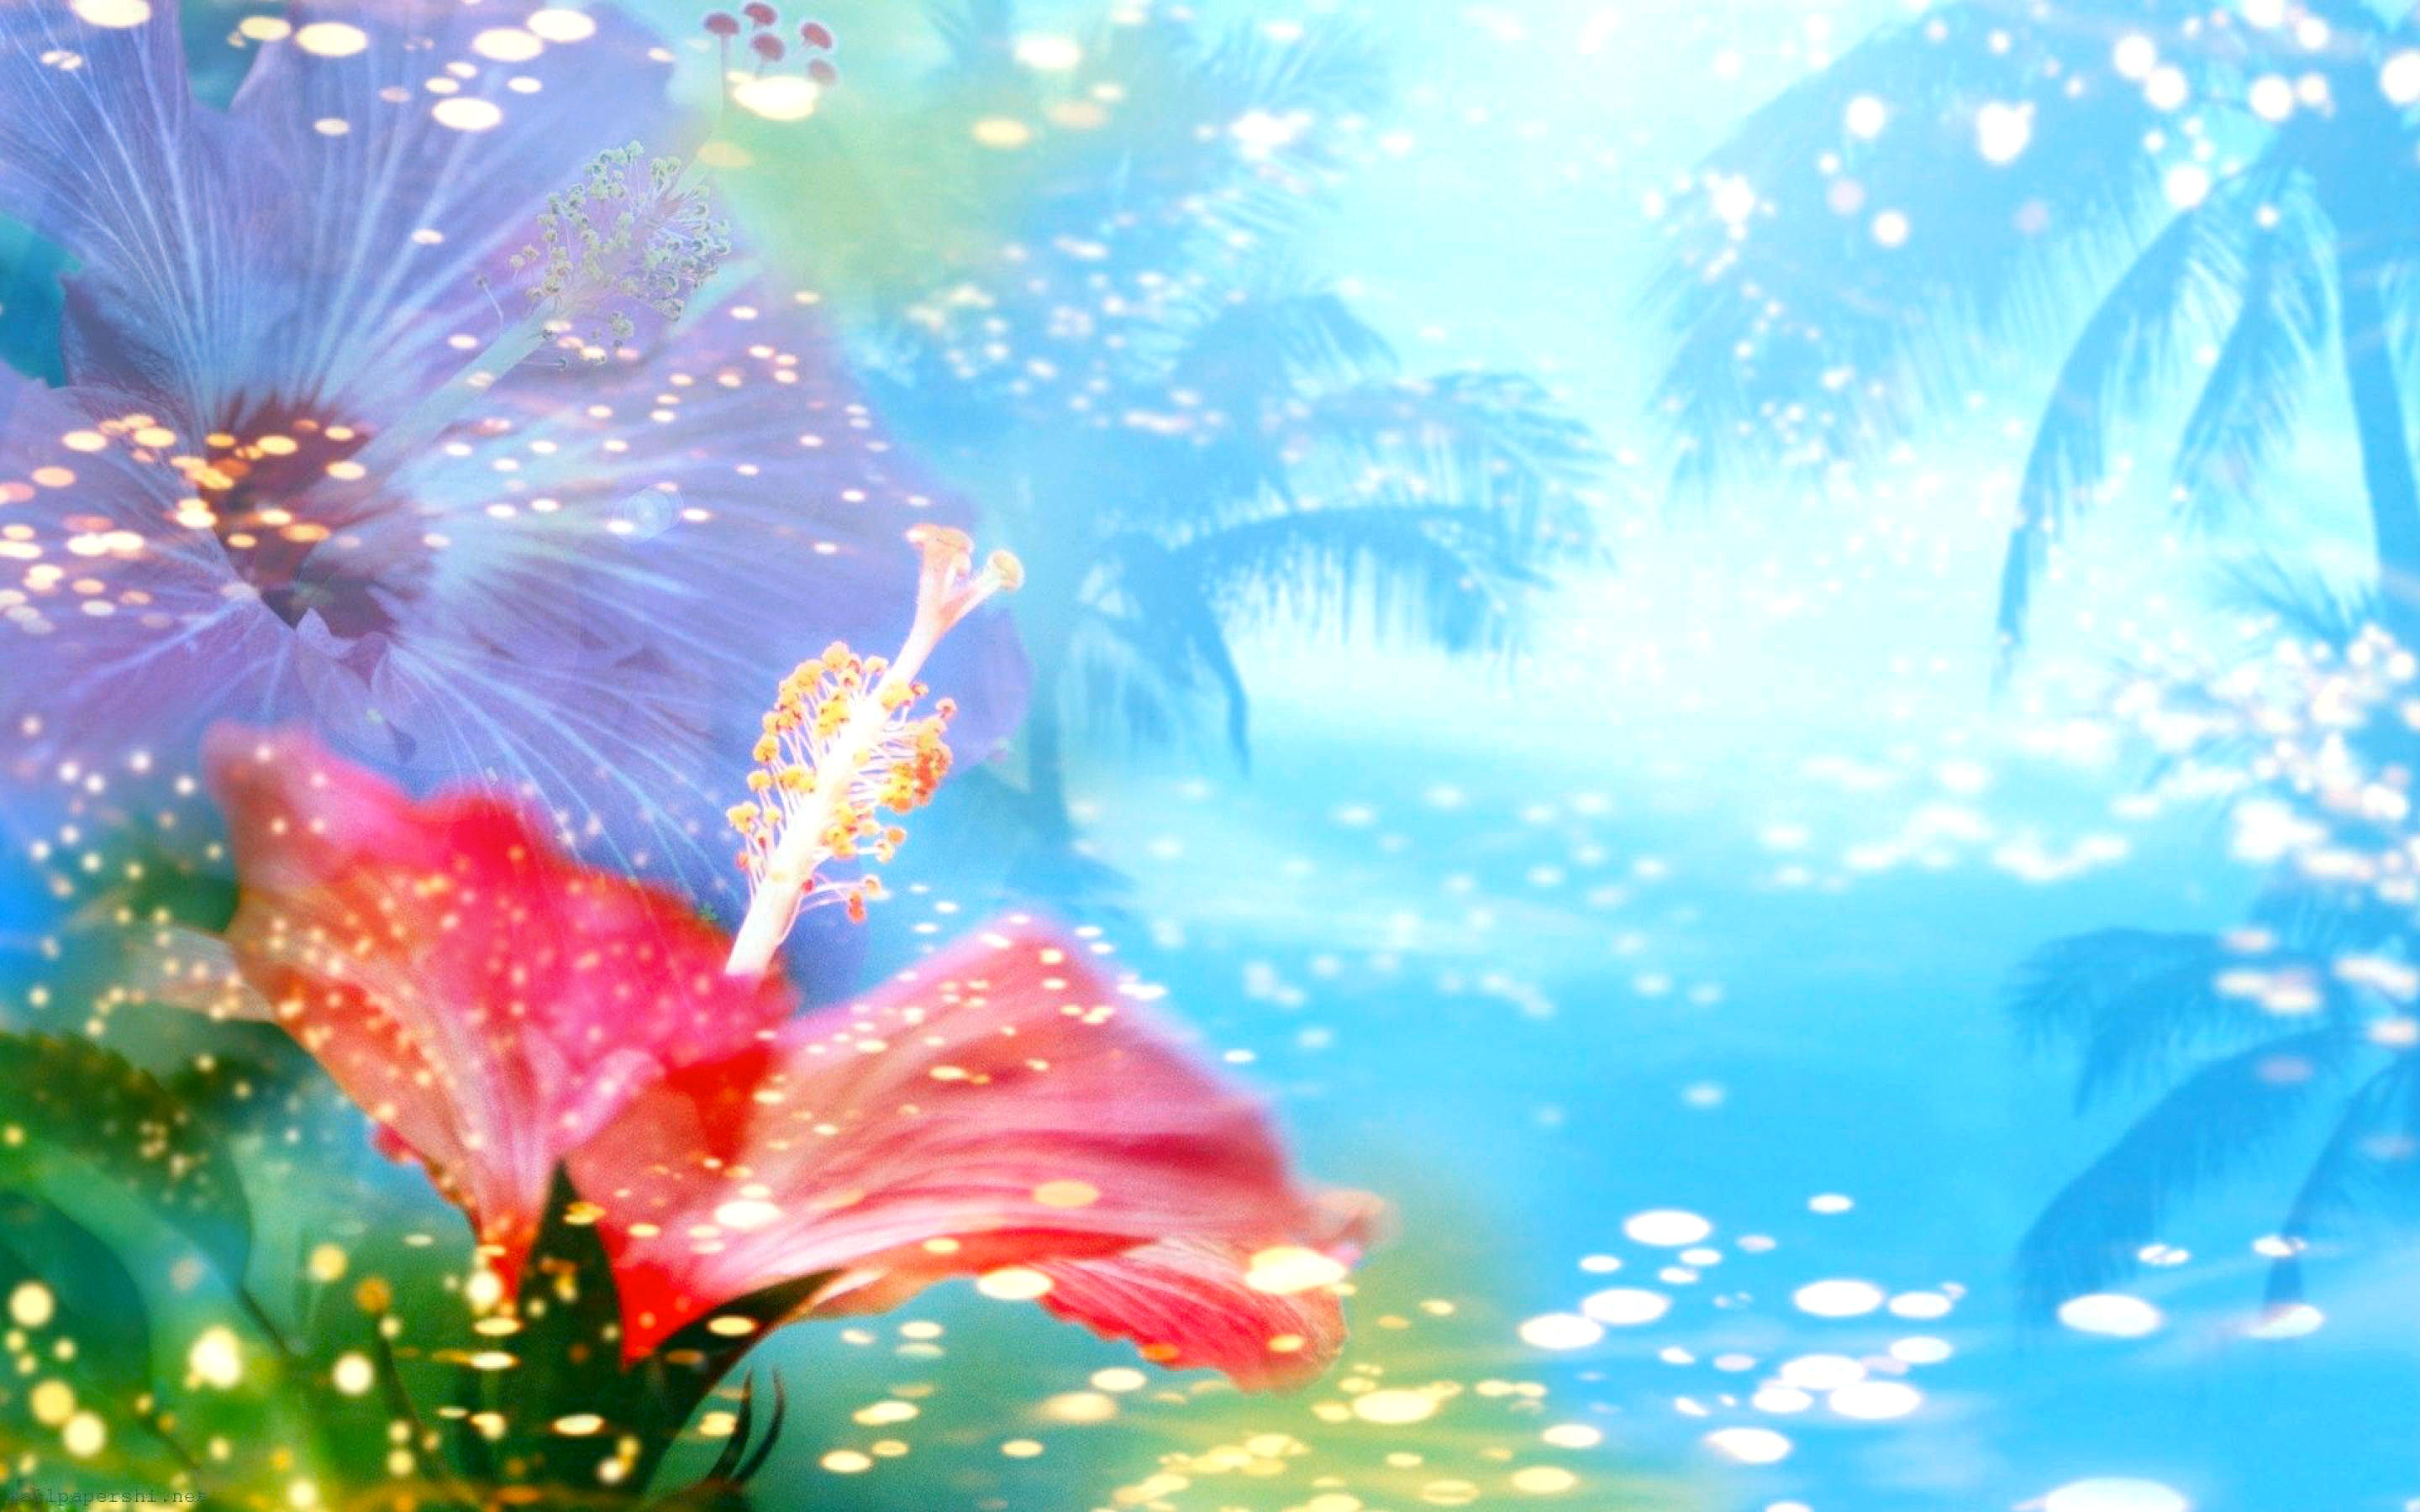 Descarga gratuita de fondo de pantalla para móvil de Flor, Pastel, Vistoso, Artístico, Tropical, Soleado.